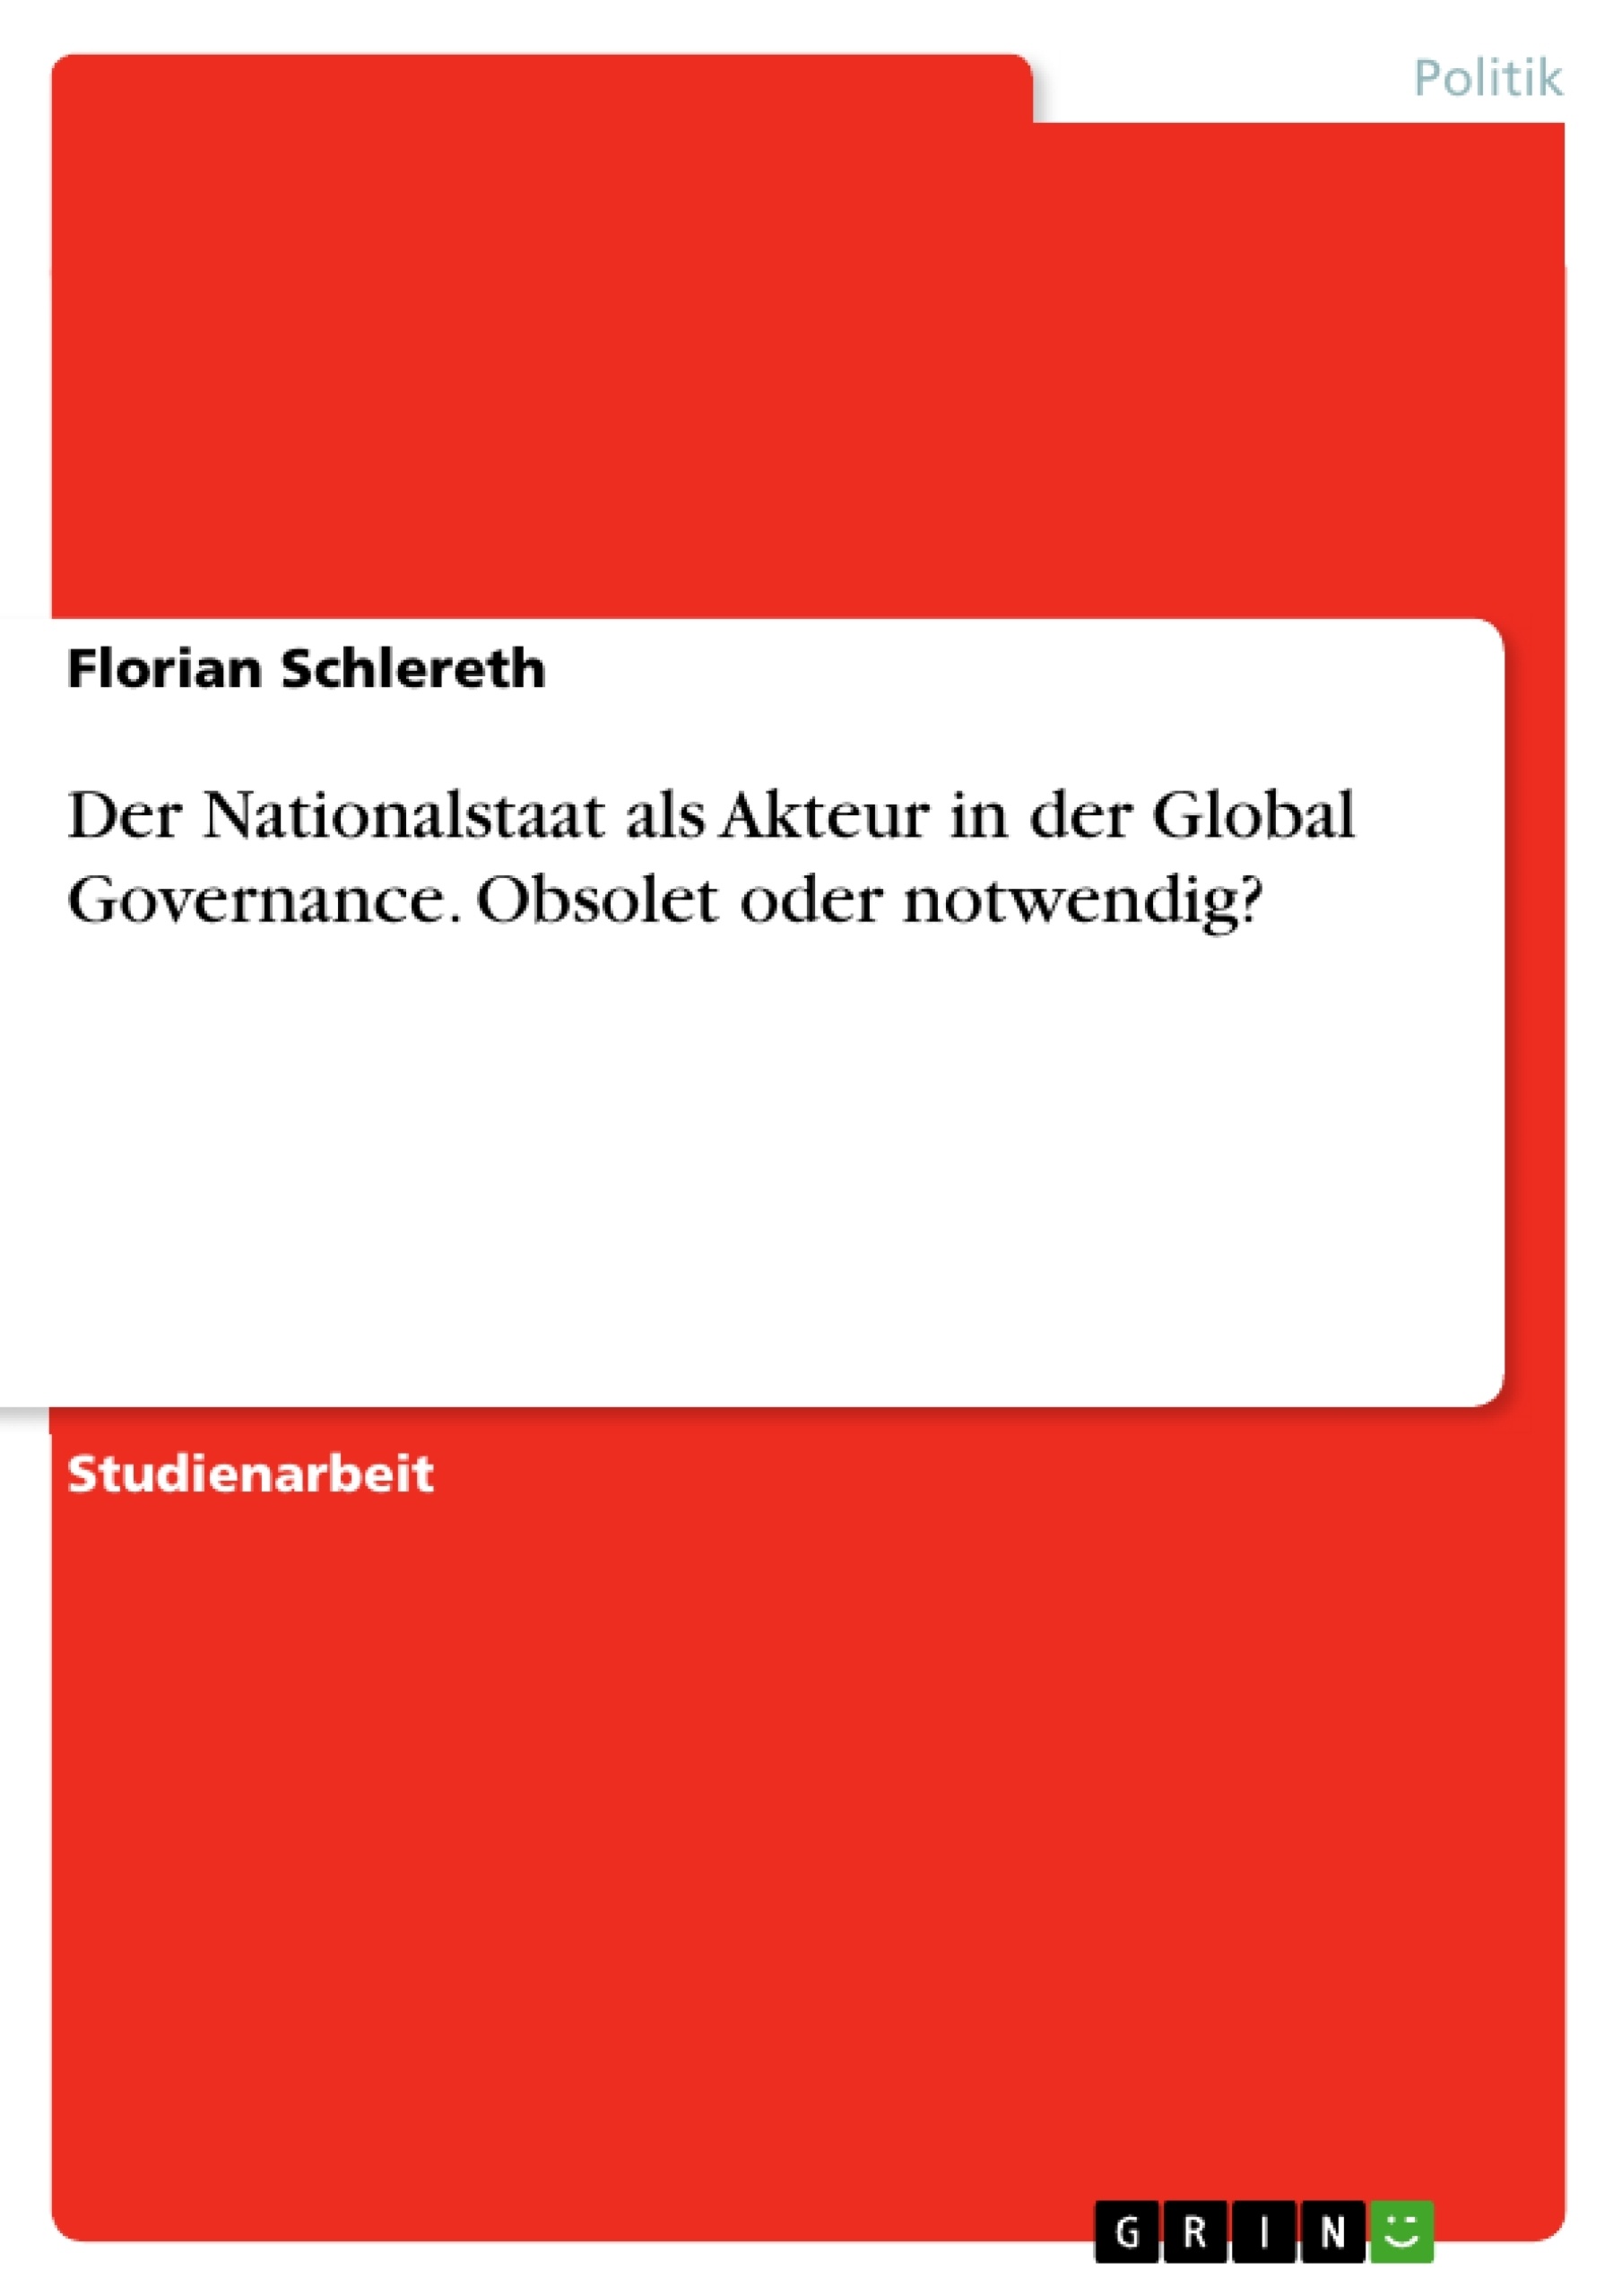 Título: Der Nationalstaat als Akteur in der Global Governance.  Obsolet oder notwendig?